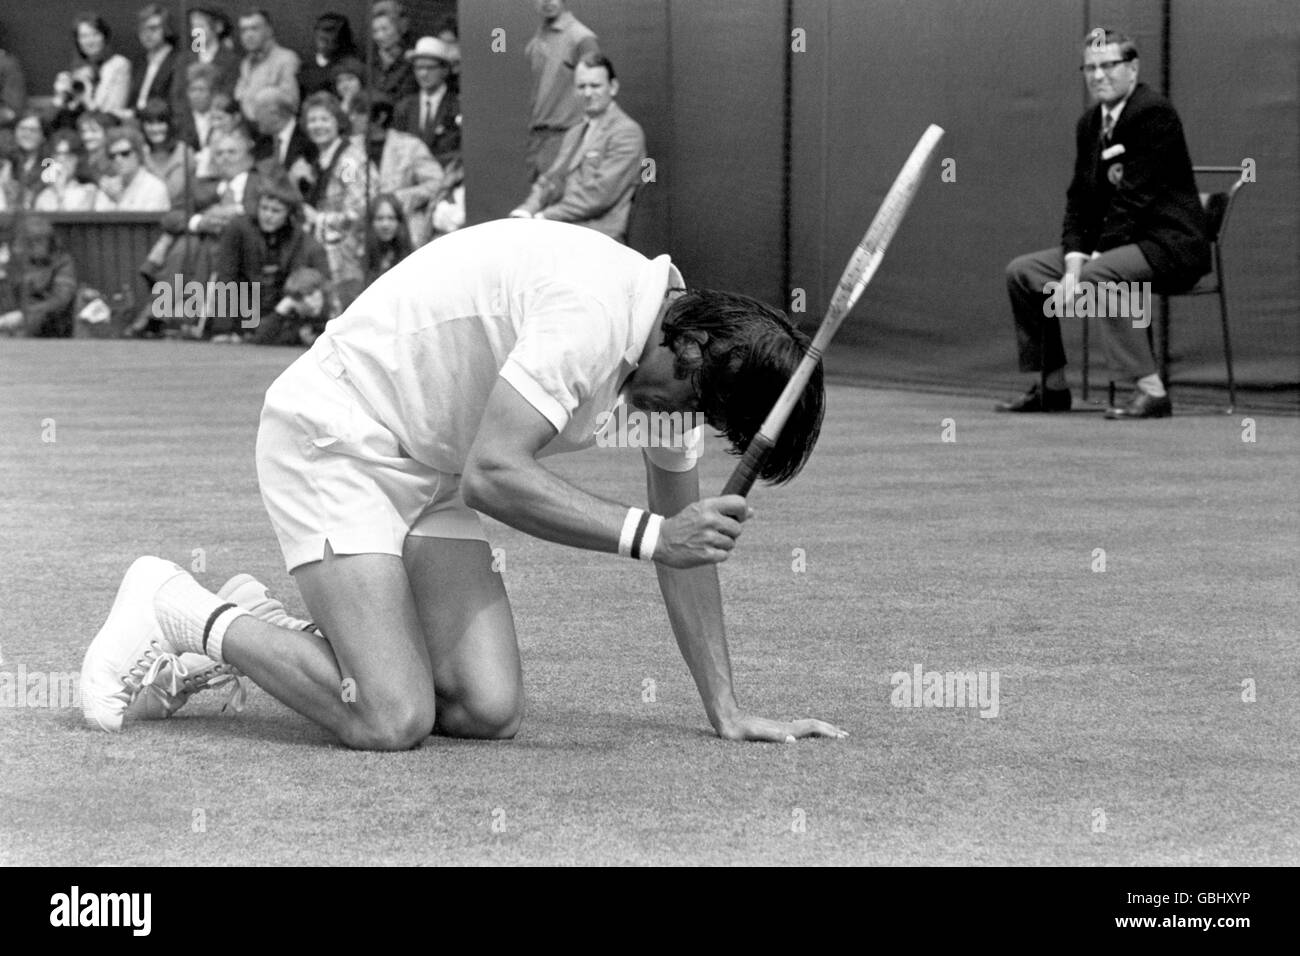 Tennis - Wimbledon Championships - Herreneinzel - Finale - Stan Smith gegen Ilie Nastase. Ilie Nastase schlägt seinen Schläger auf den Boden Stockfoto